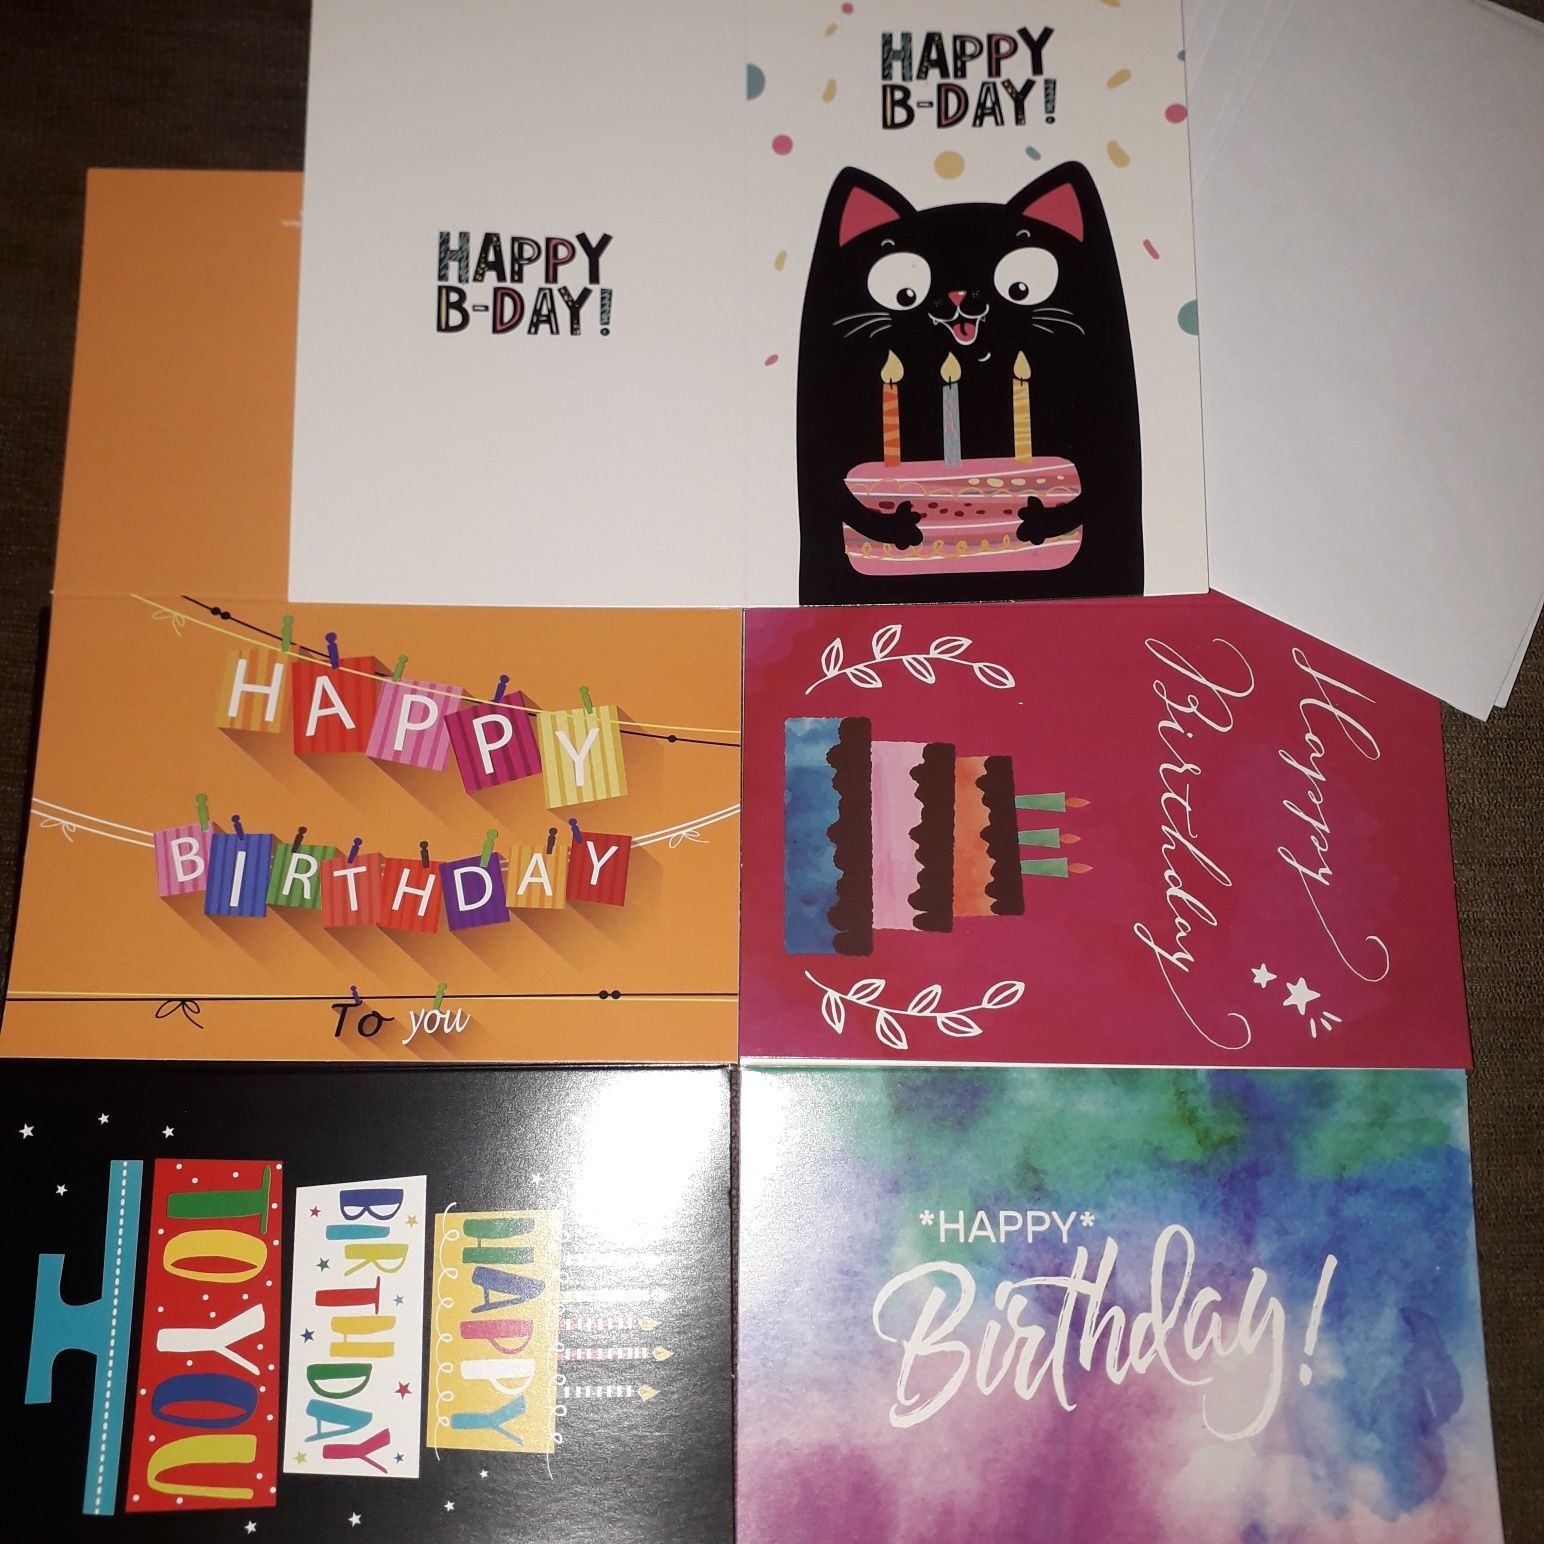 Kartki urodzinowe pięć sztuk plus koperty